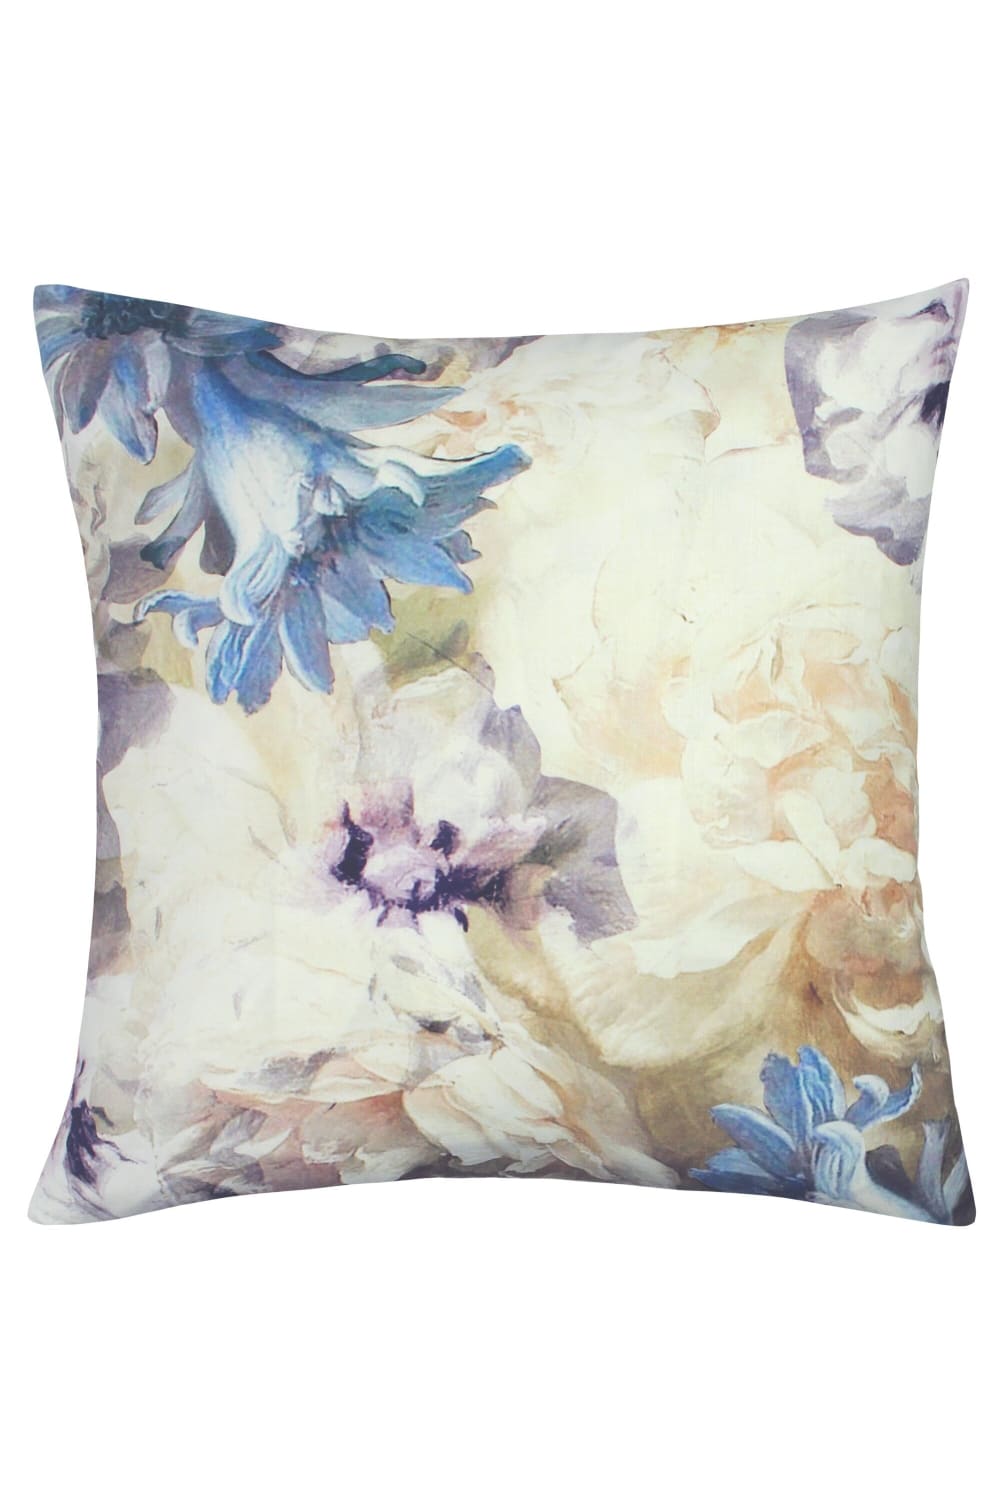 Linen House Lena Floral Throw Pillow Cover